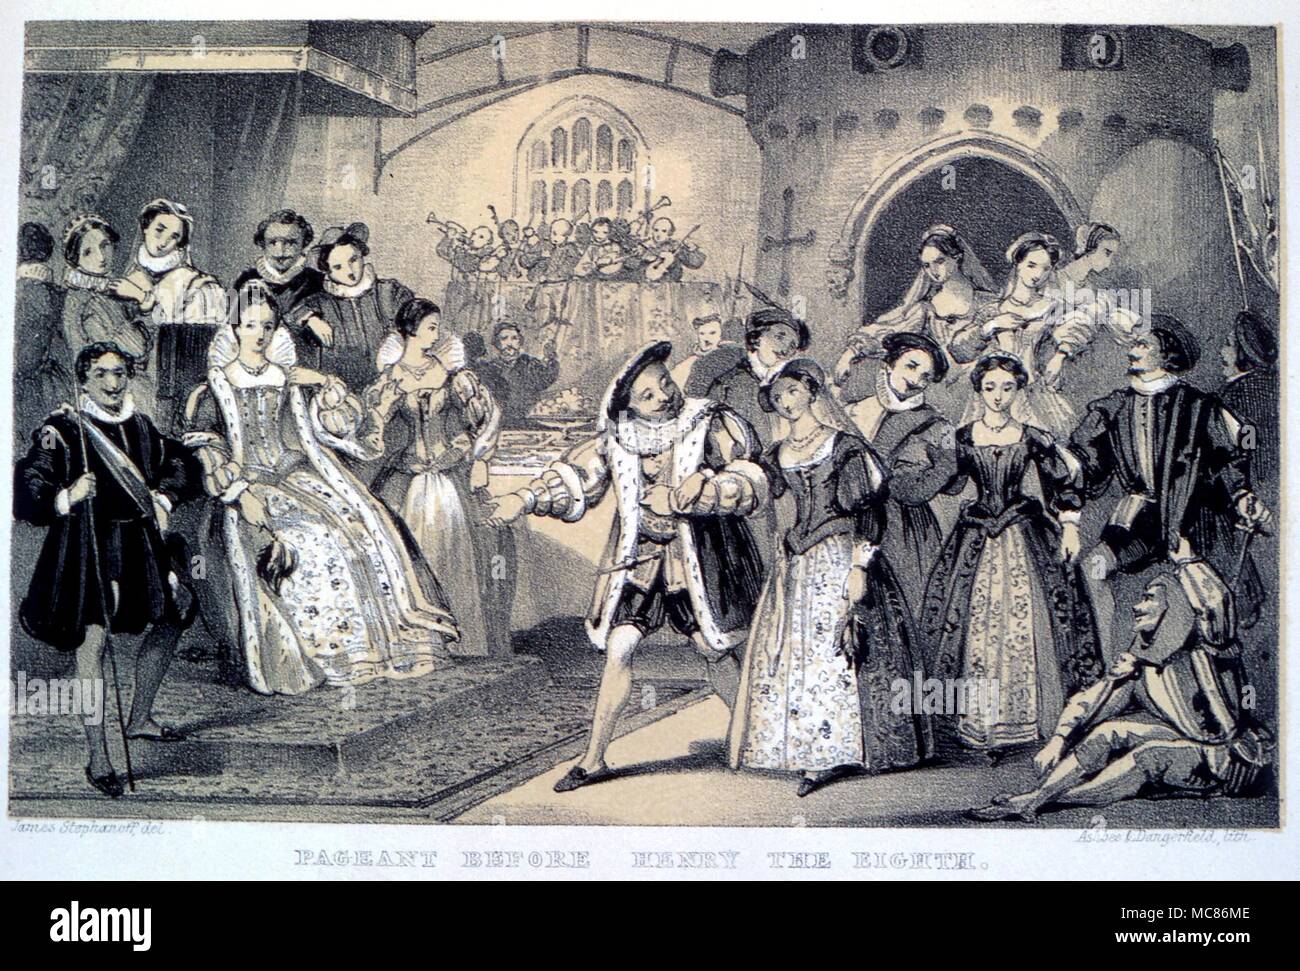 Weihnachten pageant durchgeführt werden, bevor das Henry VIII. Chromo Holzschnitt aus der William Sandys' Weihnachten seine Geschichte, Feste und Weihnachtslieder." 1870 Stockfoto